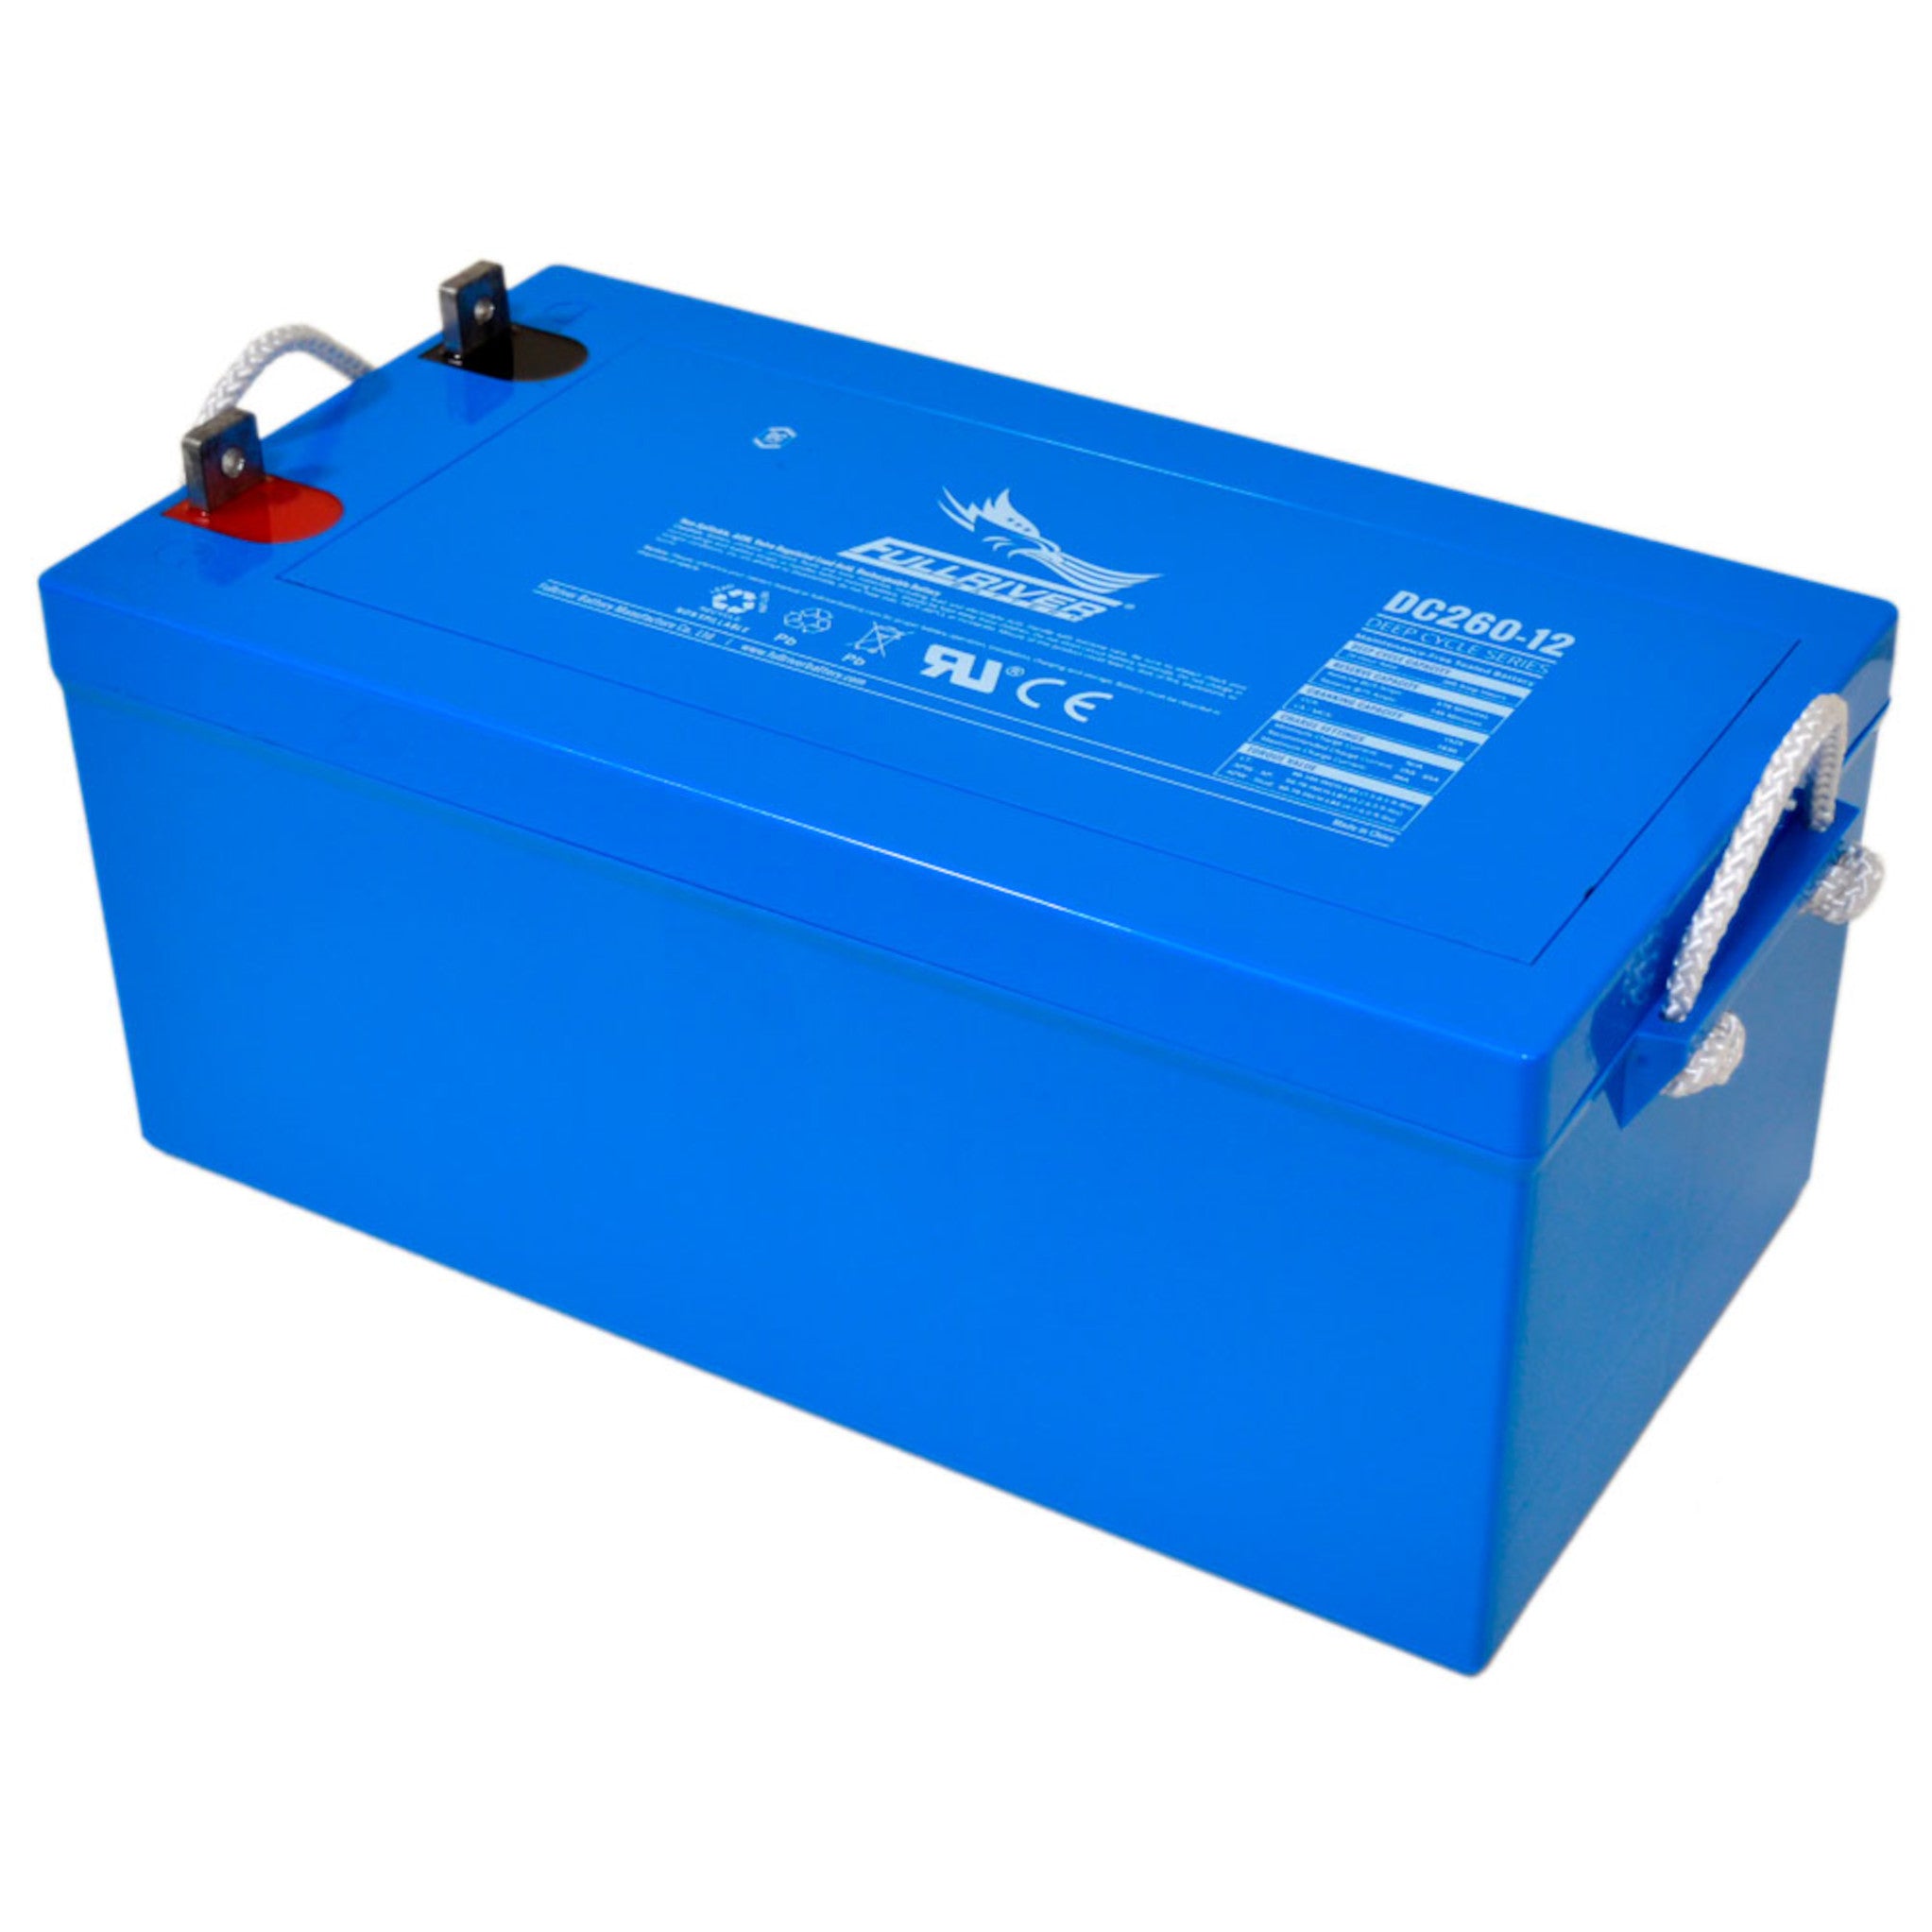 Fullriver DC260-12 AGM Battery